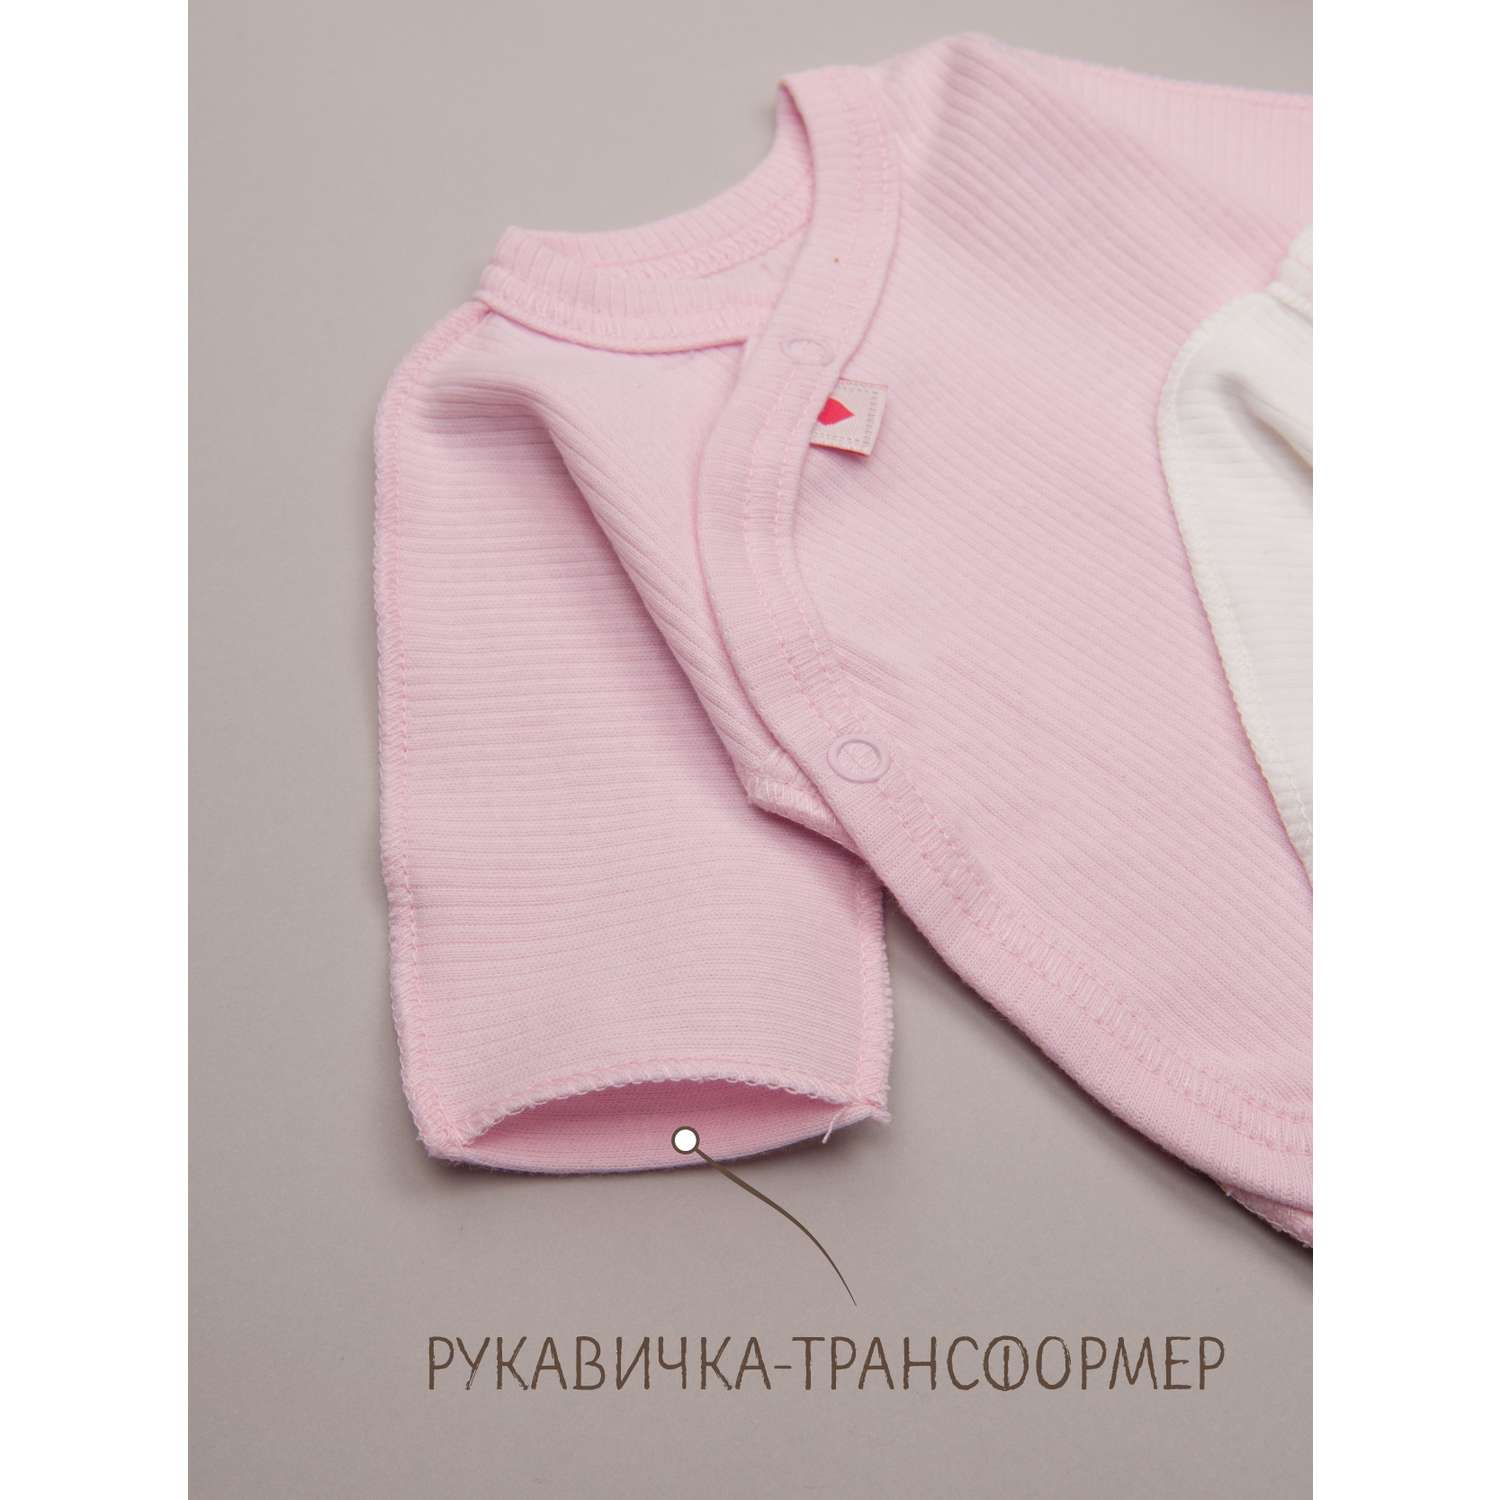 Боди и шапочка ТРИЯ М3102-2шт_036 интерлок розовый рубчик - фото 2